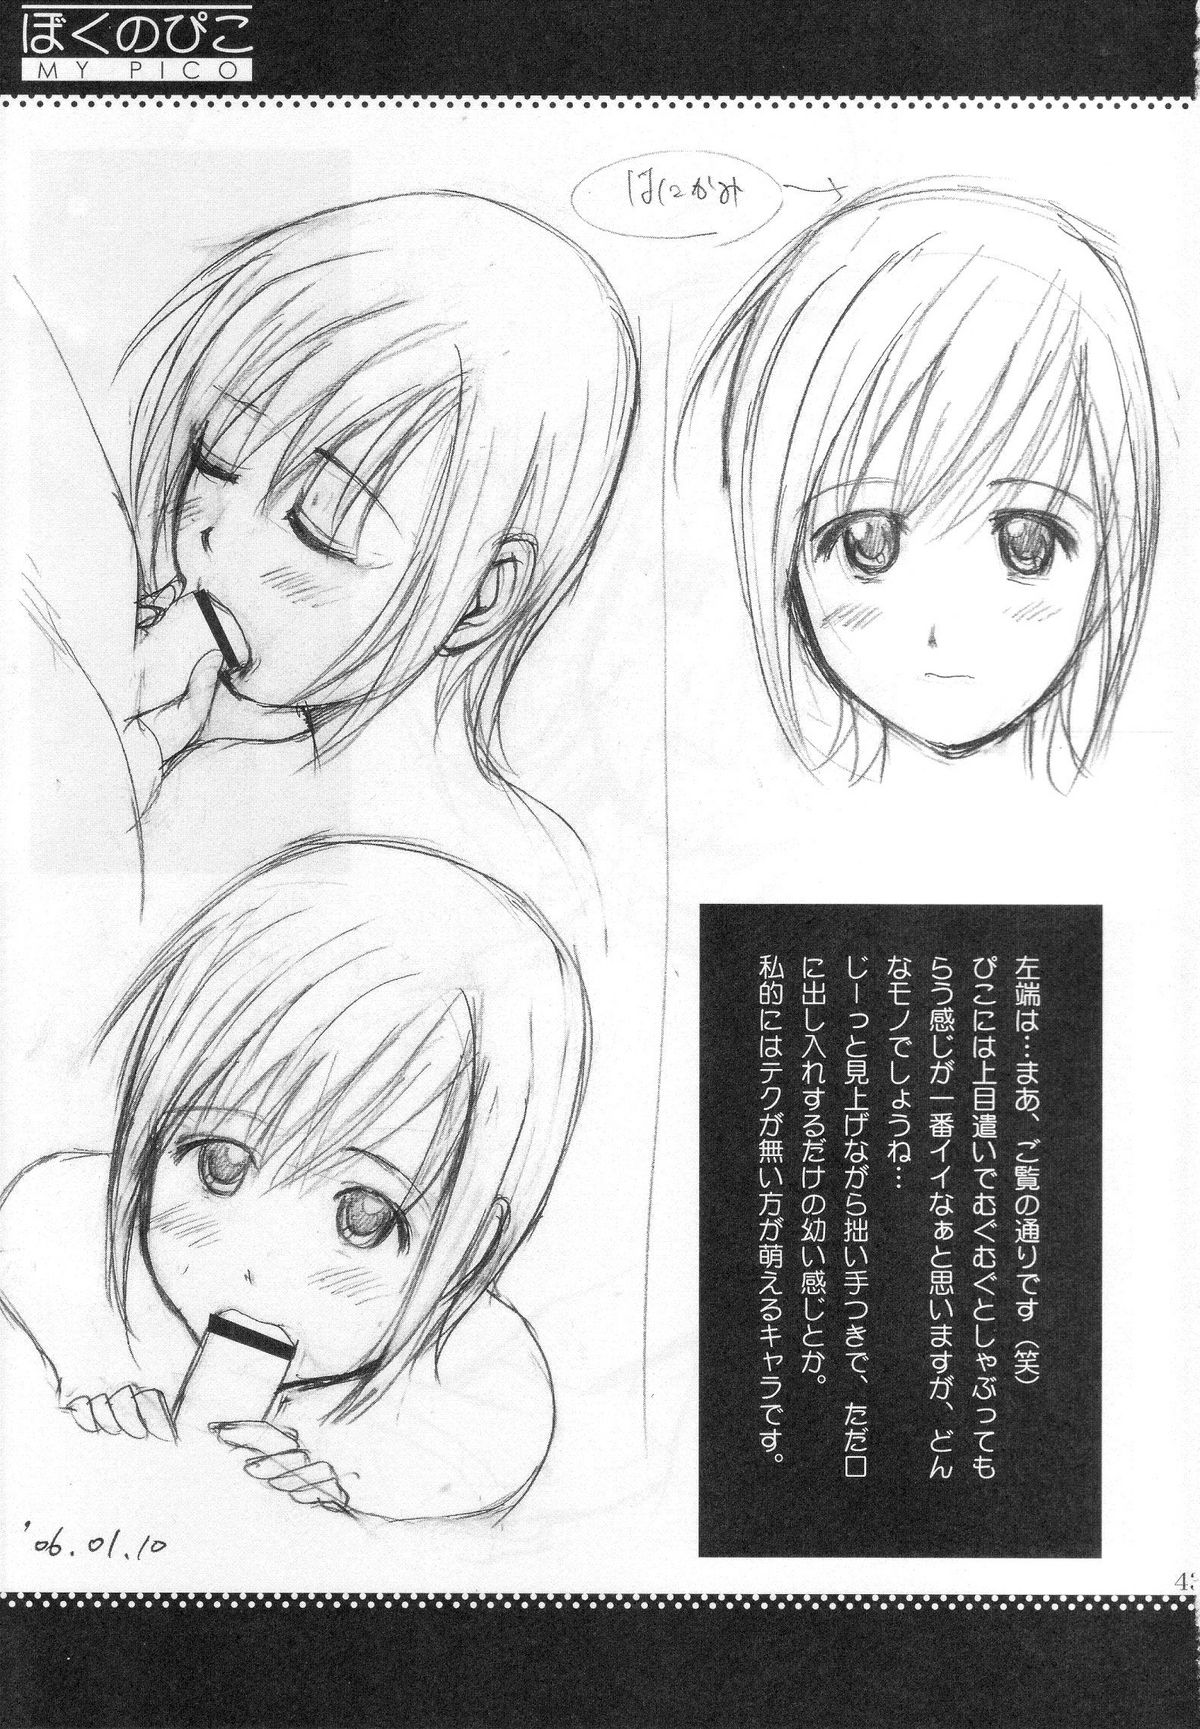 (COMIC1) [Saigado] Boku no Pico Comic + Koushiki Character Genanshuu (Boku no Pico) page 41 full